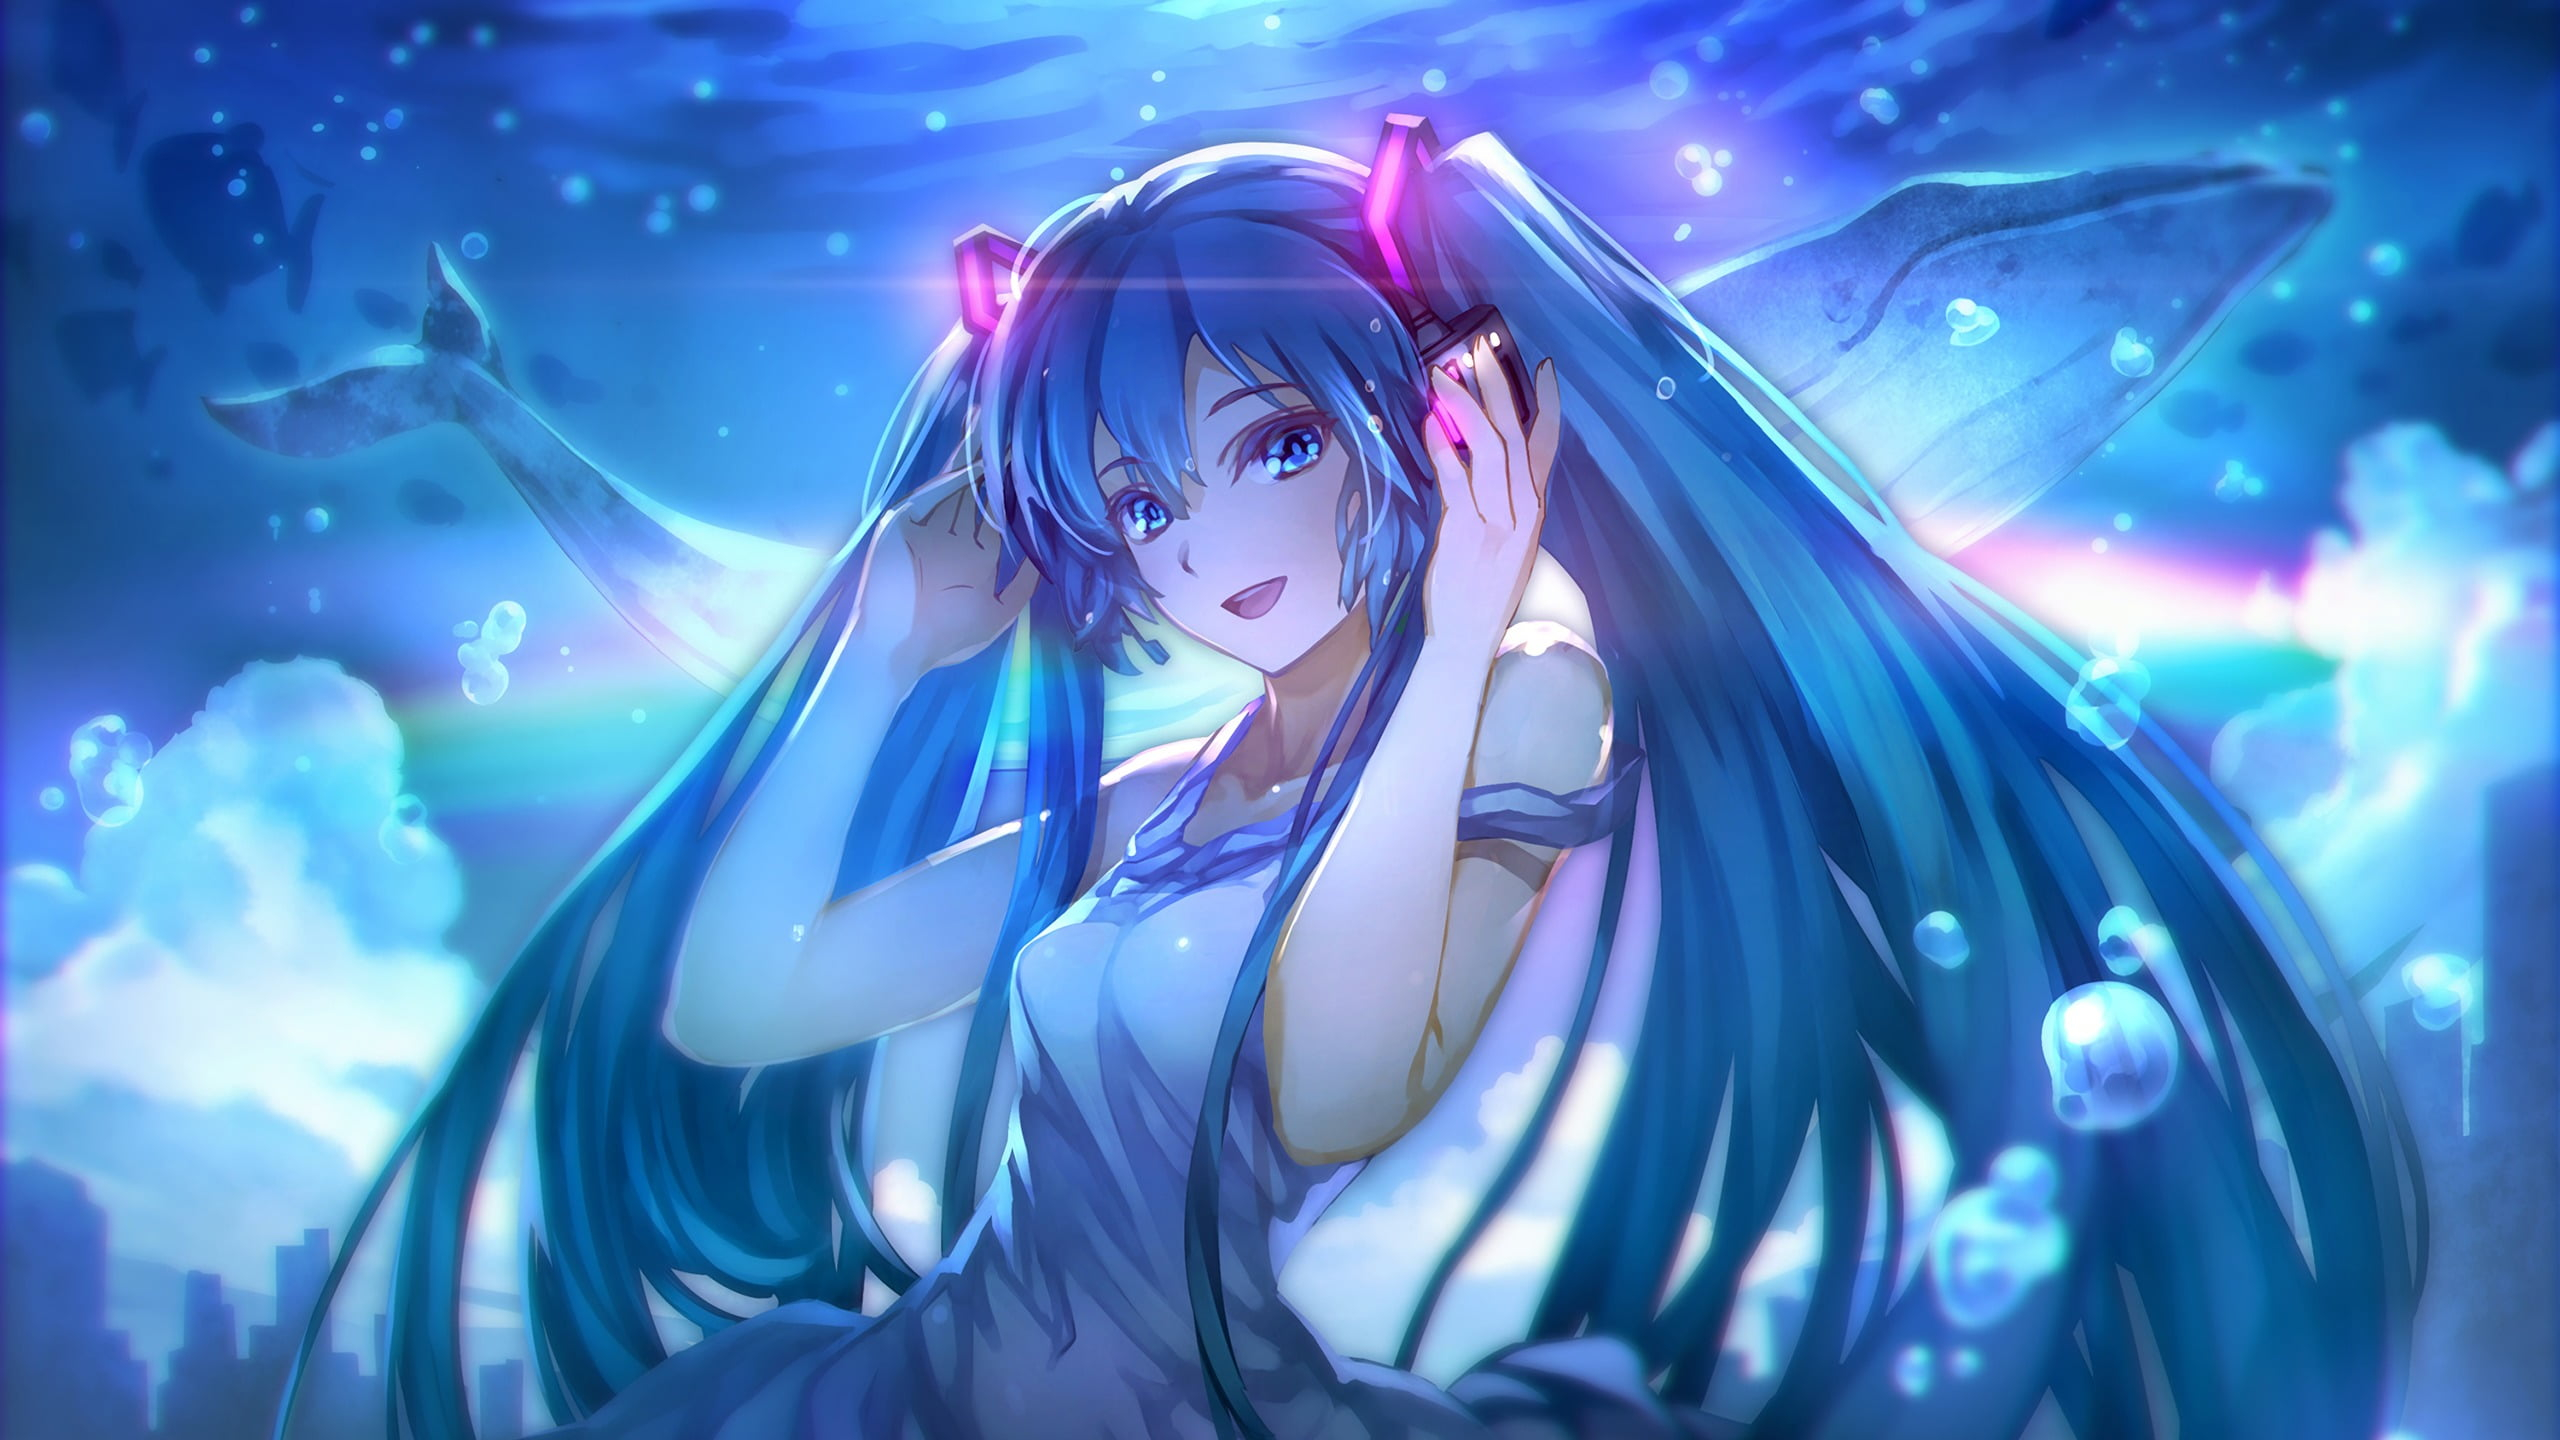 Điểm qua hình ảnh Anime cá tính tóc xanh nước biển, với những đường nét thiết kế tinh tế và sắc màu tóc rực rỡ, bạn sẽ không thể rời mắt khỏi nhân vật này. Hãy cùng khám phá bộ ảnh đầy màu sắc và năng động này nhé.